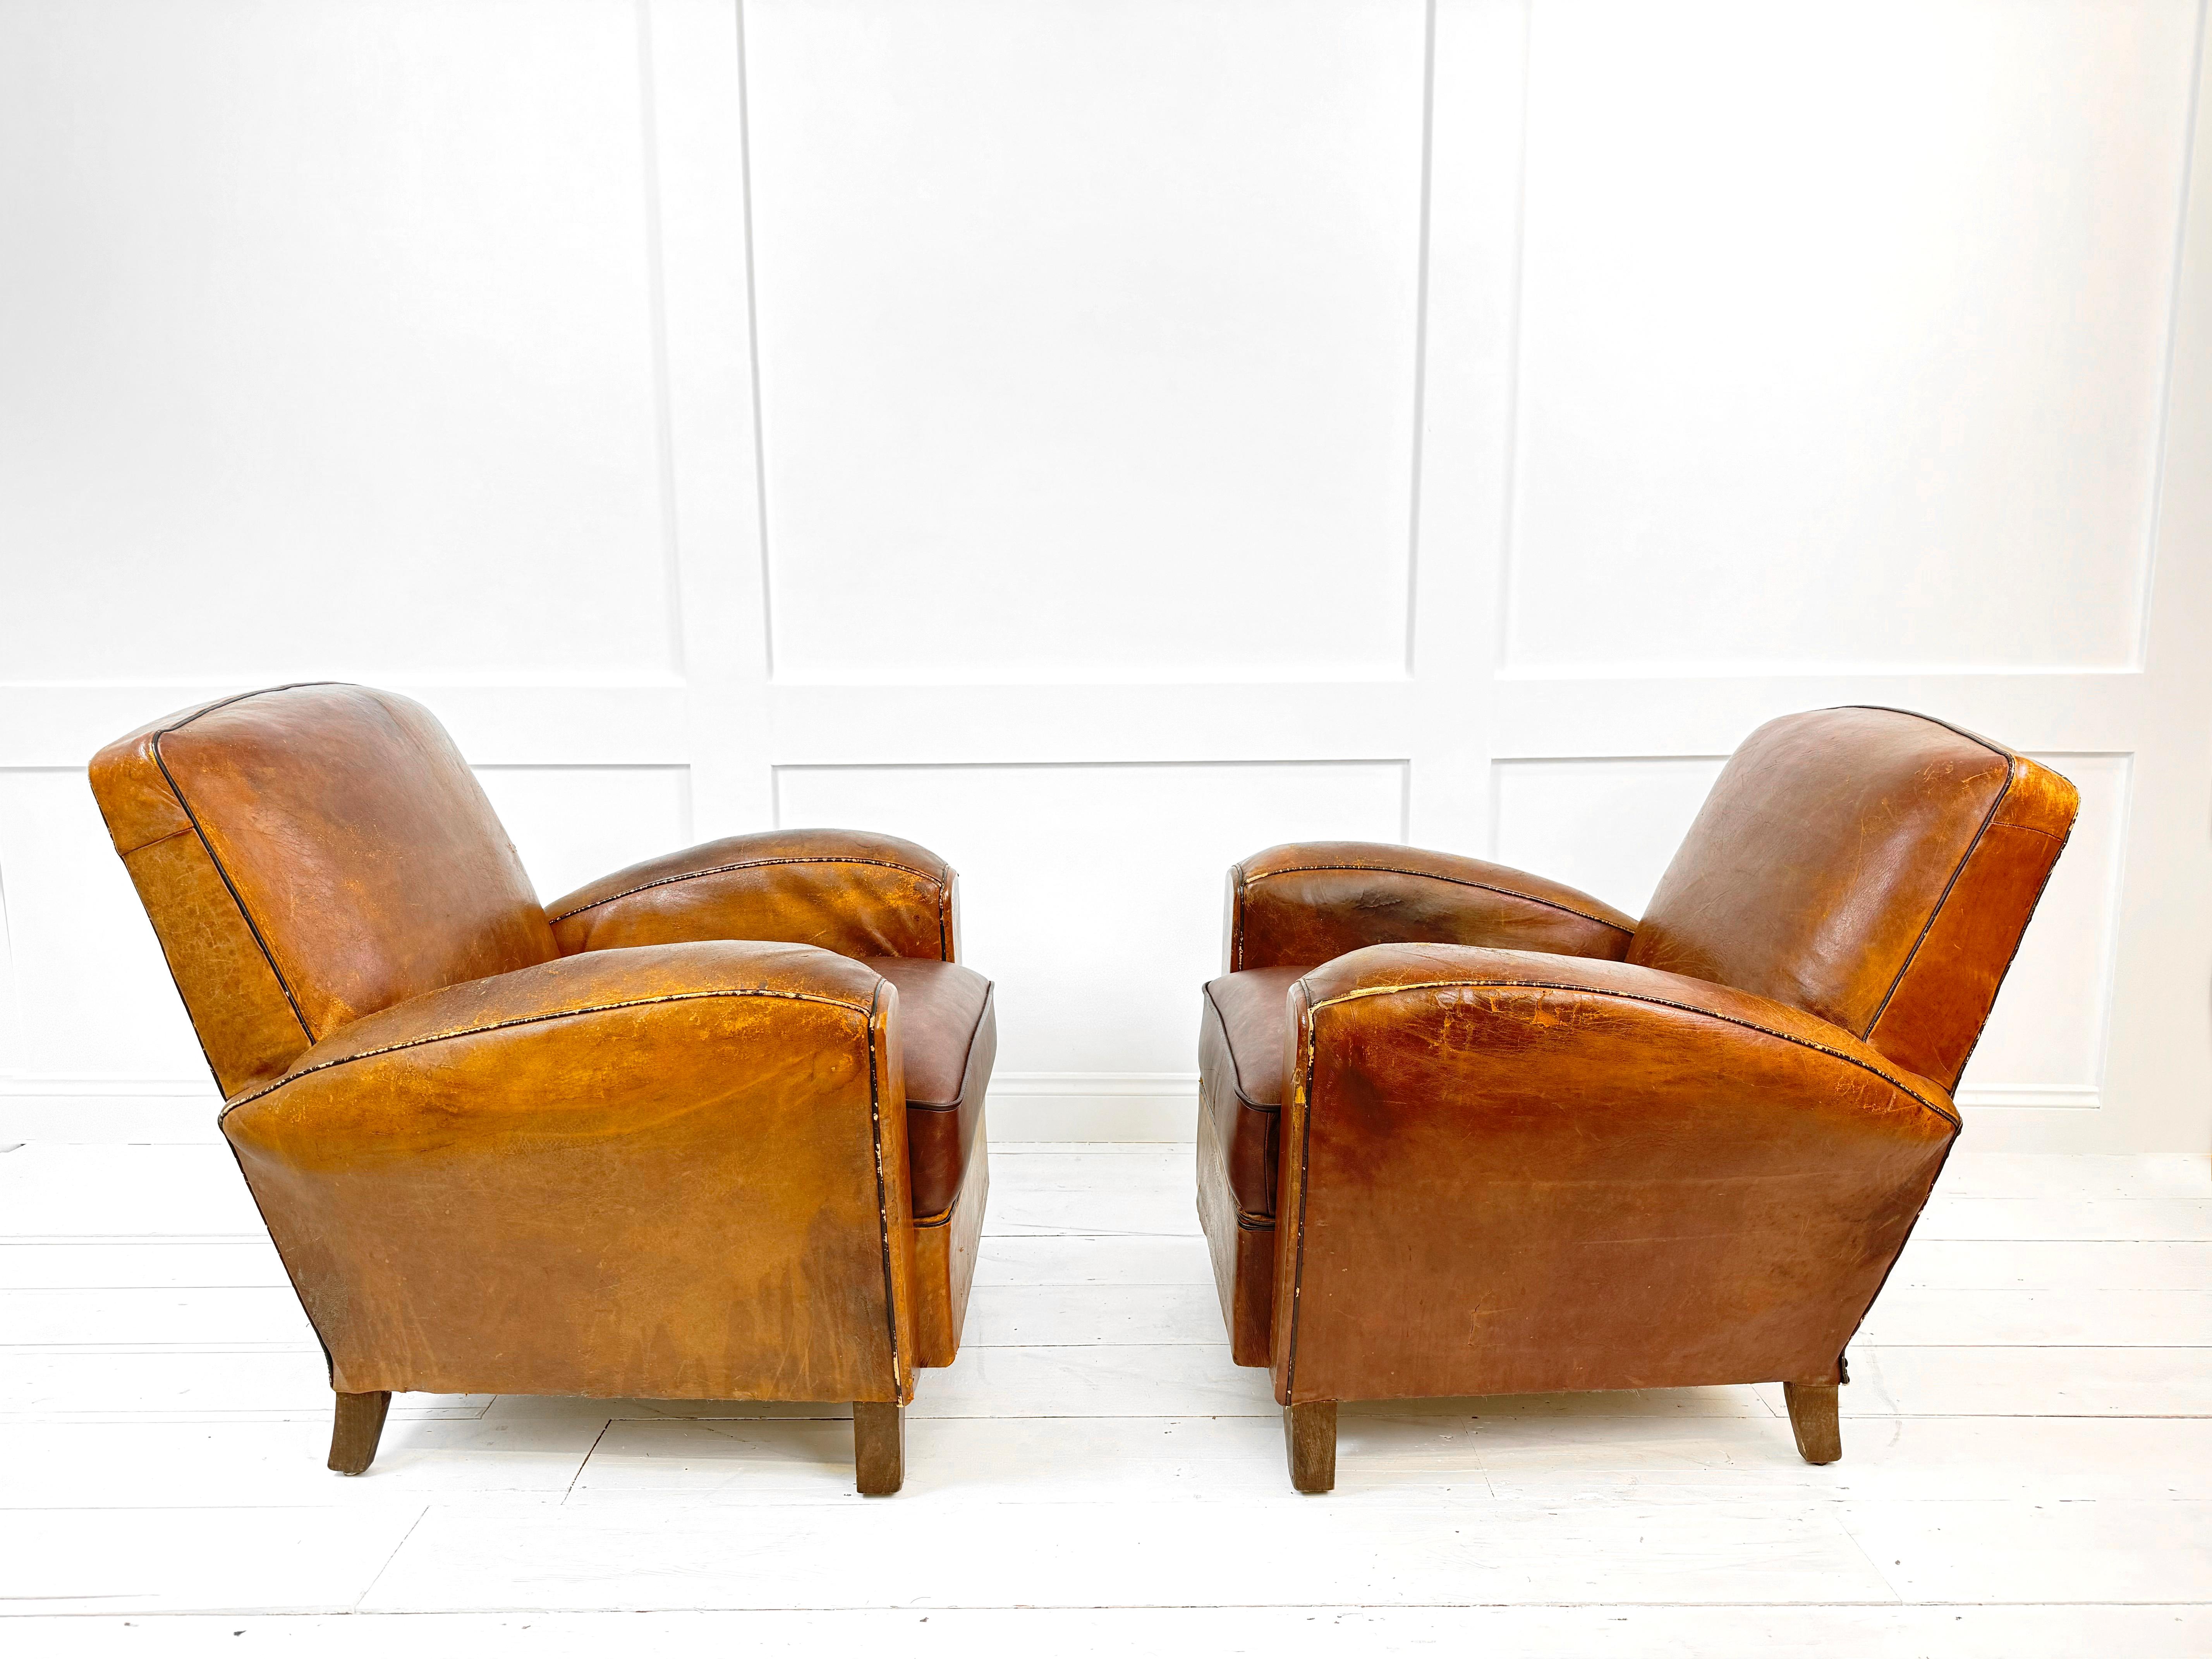 Der Inbegriff des französischen Art-Déco-Stils - die braunen Ledersessel aus den 1930er Jahren. Dieses Paar exquisiter Sessel strahlt Luxus und Raffinesse aus und verkörpert die Eleganz der damaligen Zeit. Die aus feinstem hellbraunem Leder